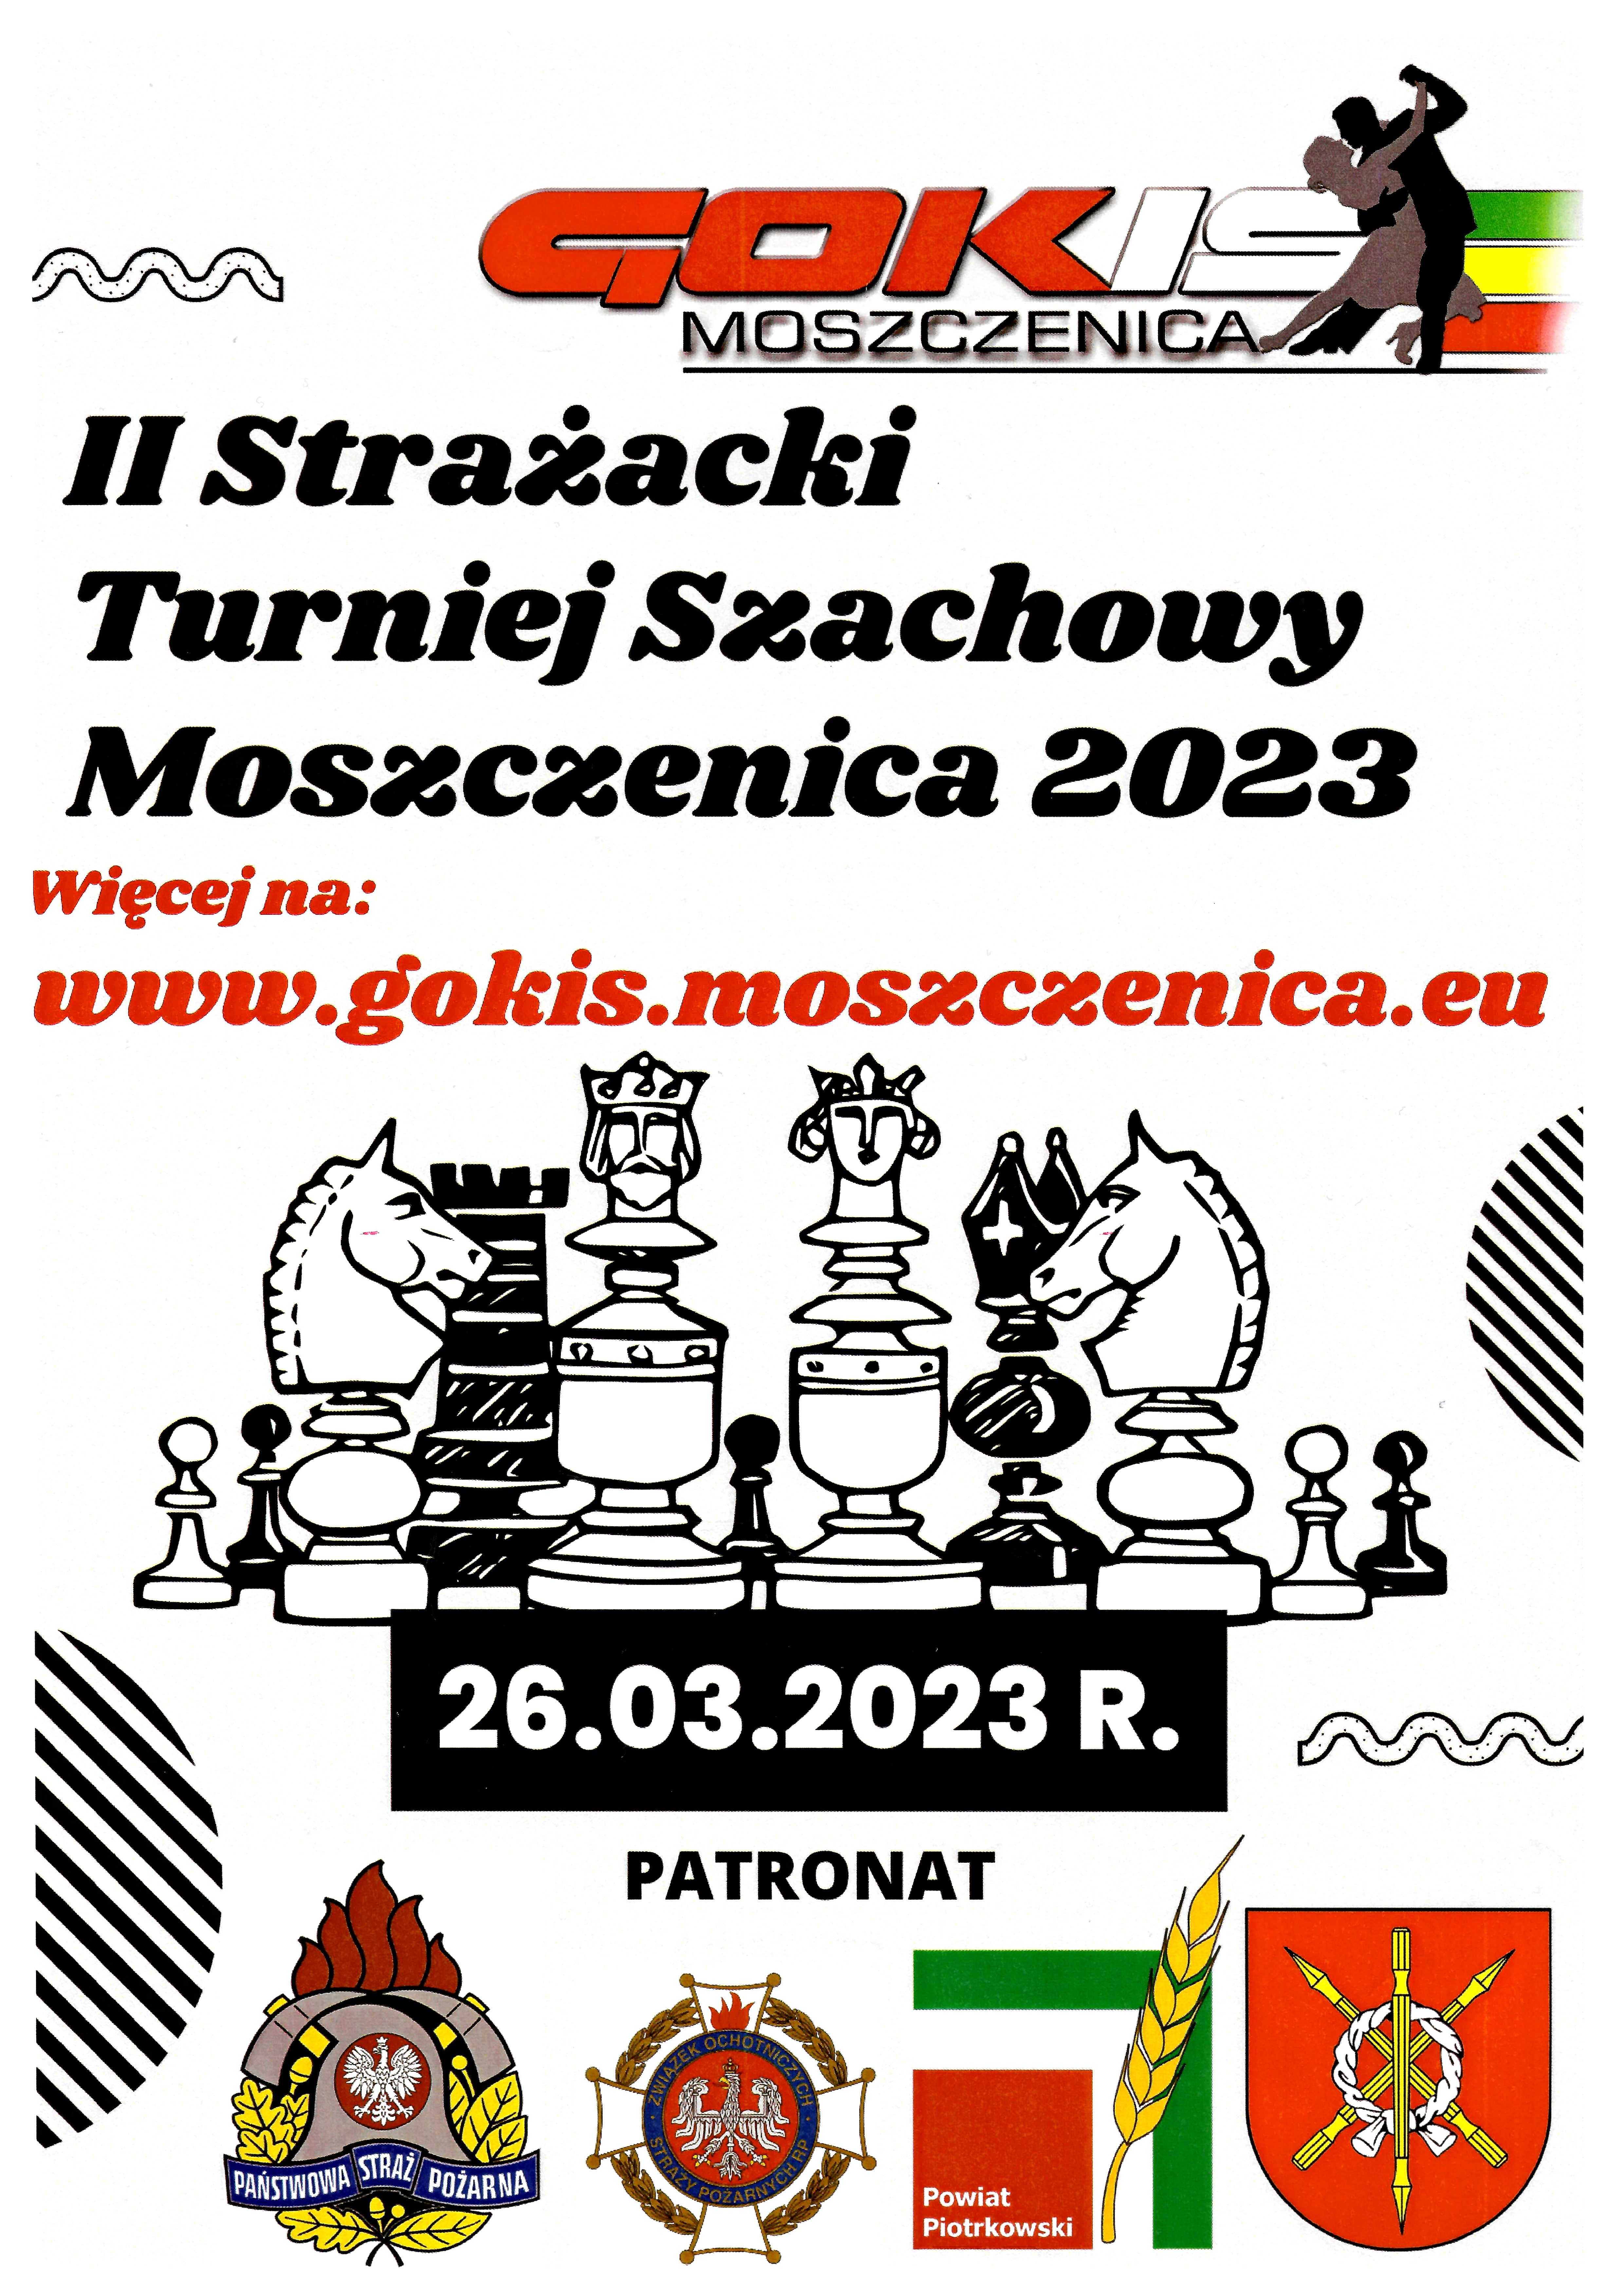 II Strażacki Turniej Szachowy Moszczenica 2023 odbędzie się 26.03.2023, więcej informacji na www.gokis.moszczenica.eu